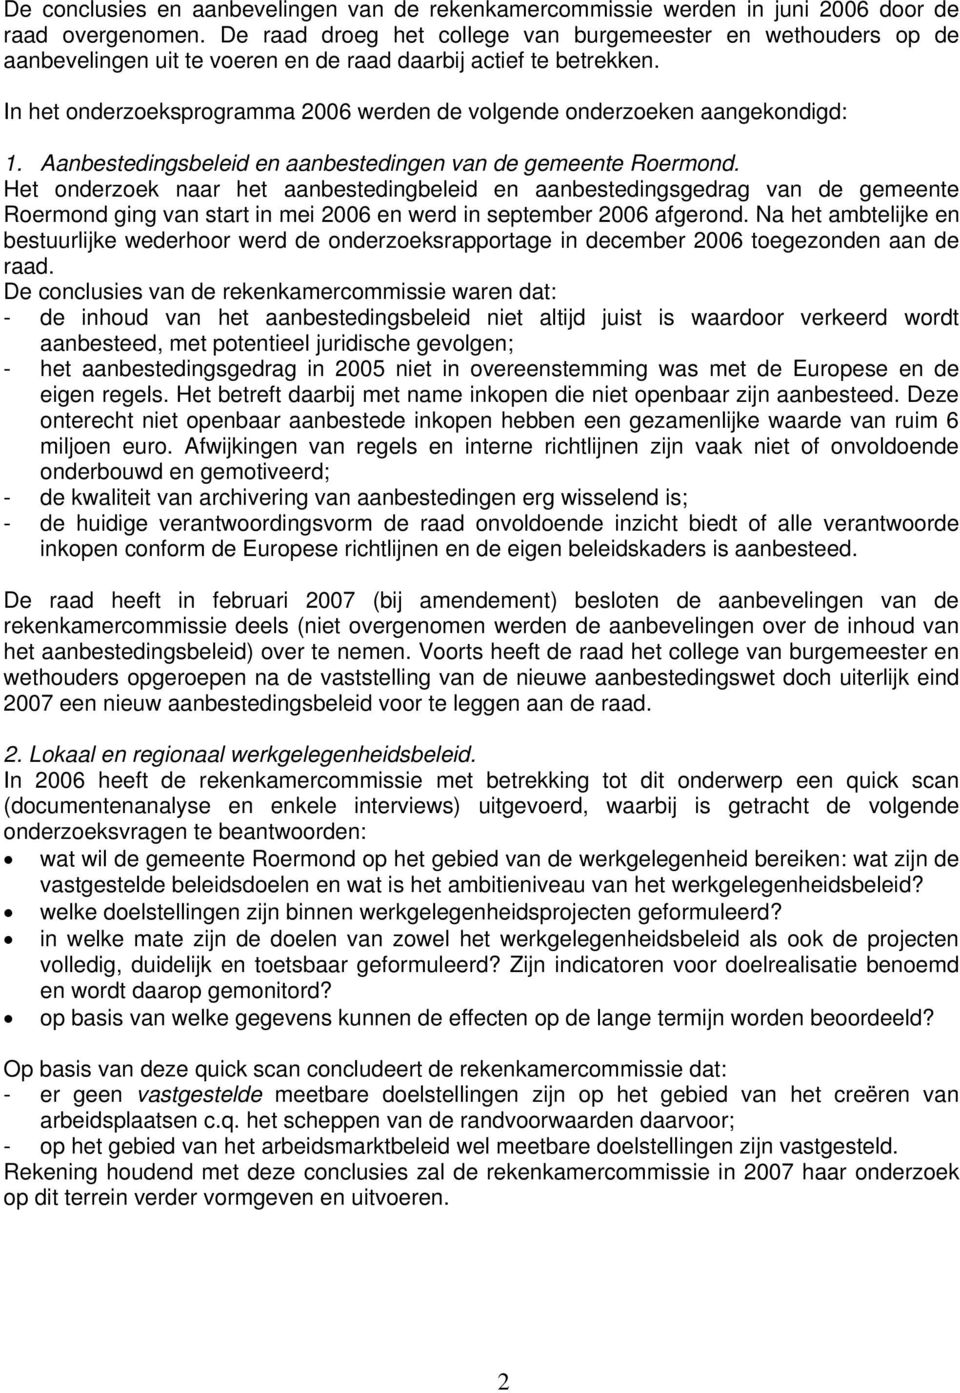 In het onderzoeksprogramma 2006 werden de volgende onderzoeken aangekondigd: 1. Aanbestedingsbeleid en aanbestedingen van de gemeente Roermond.